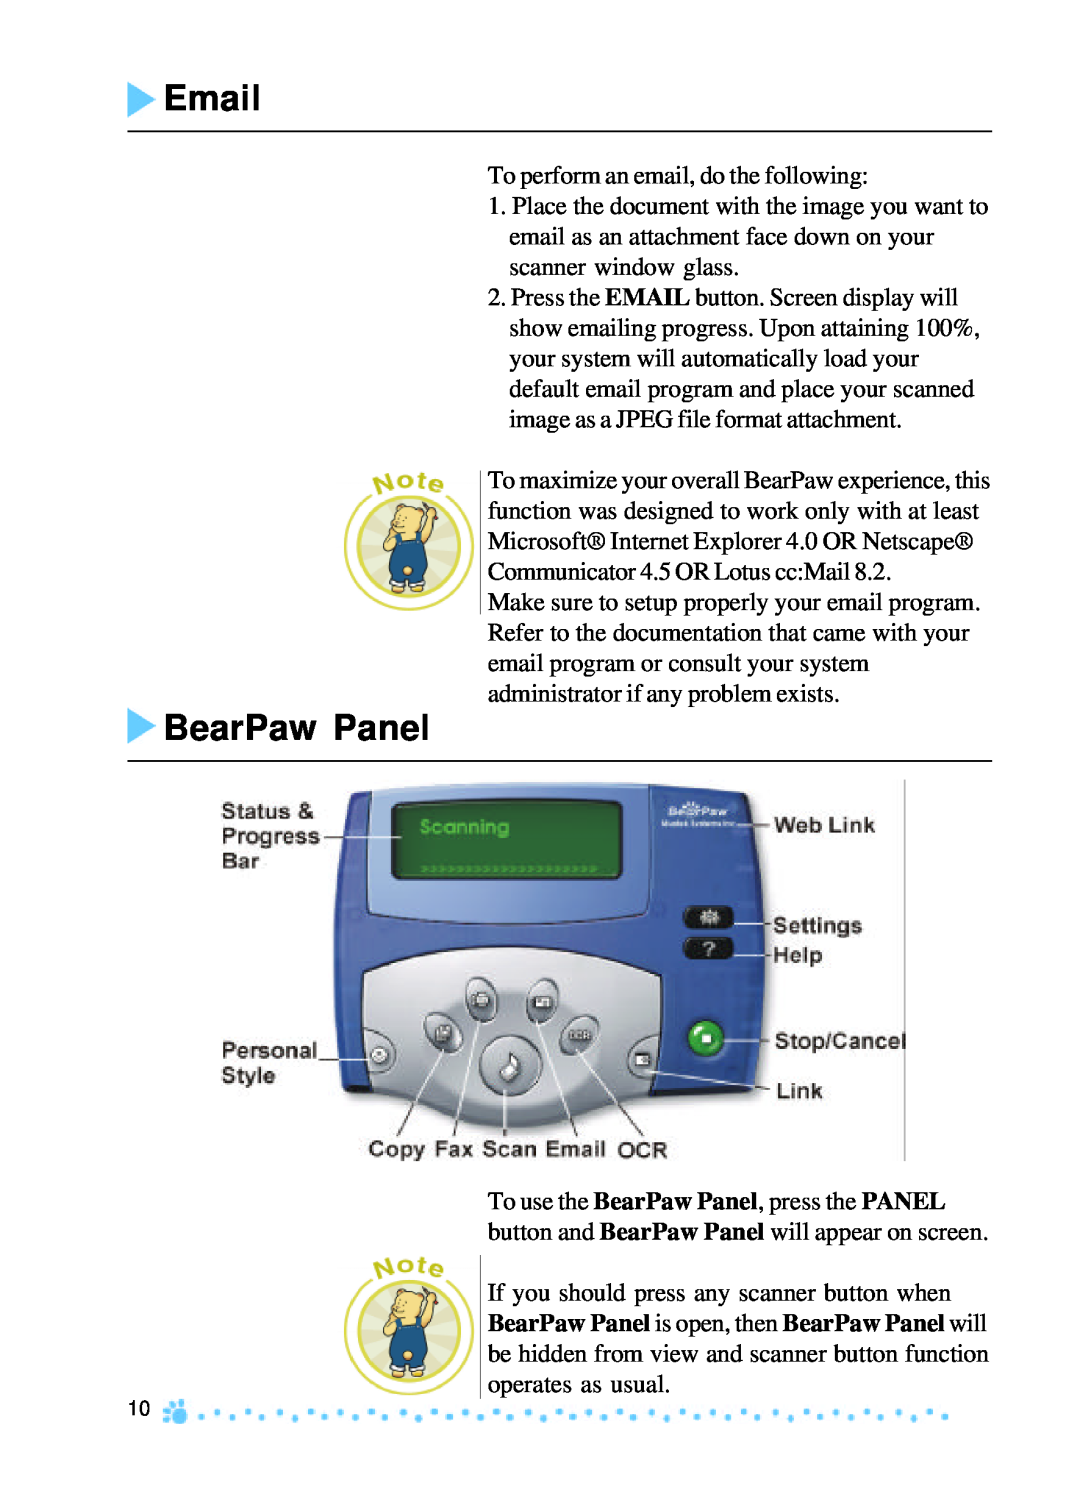 Mustek 1200 manual Email, BearPaw Panel 